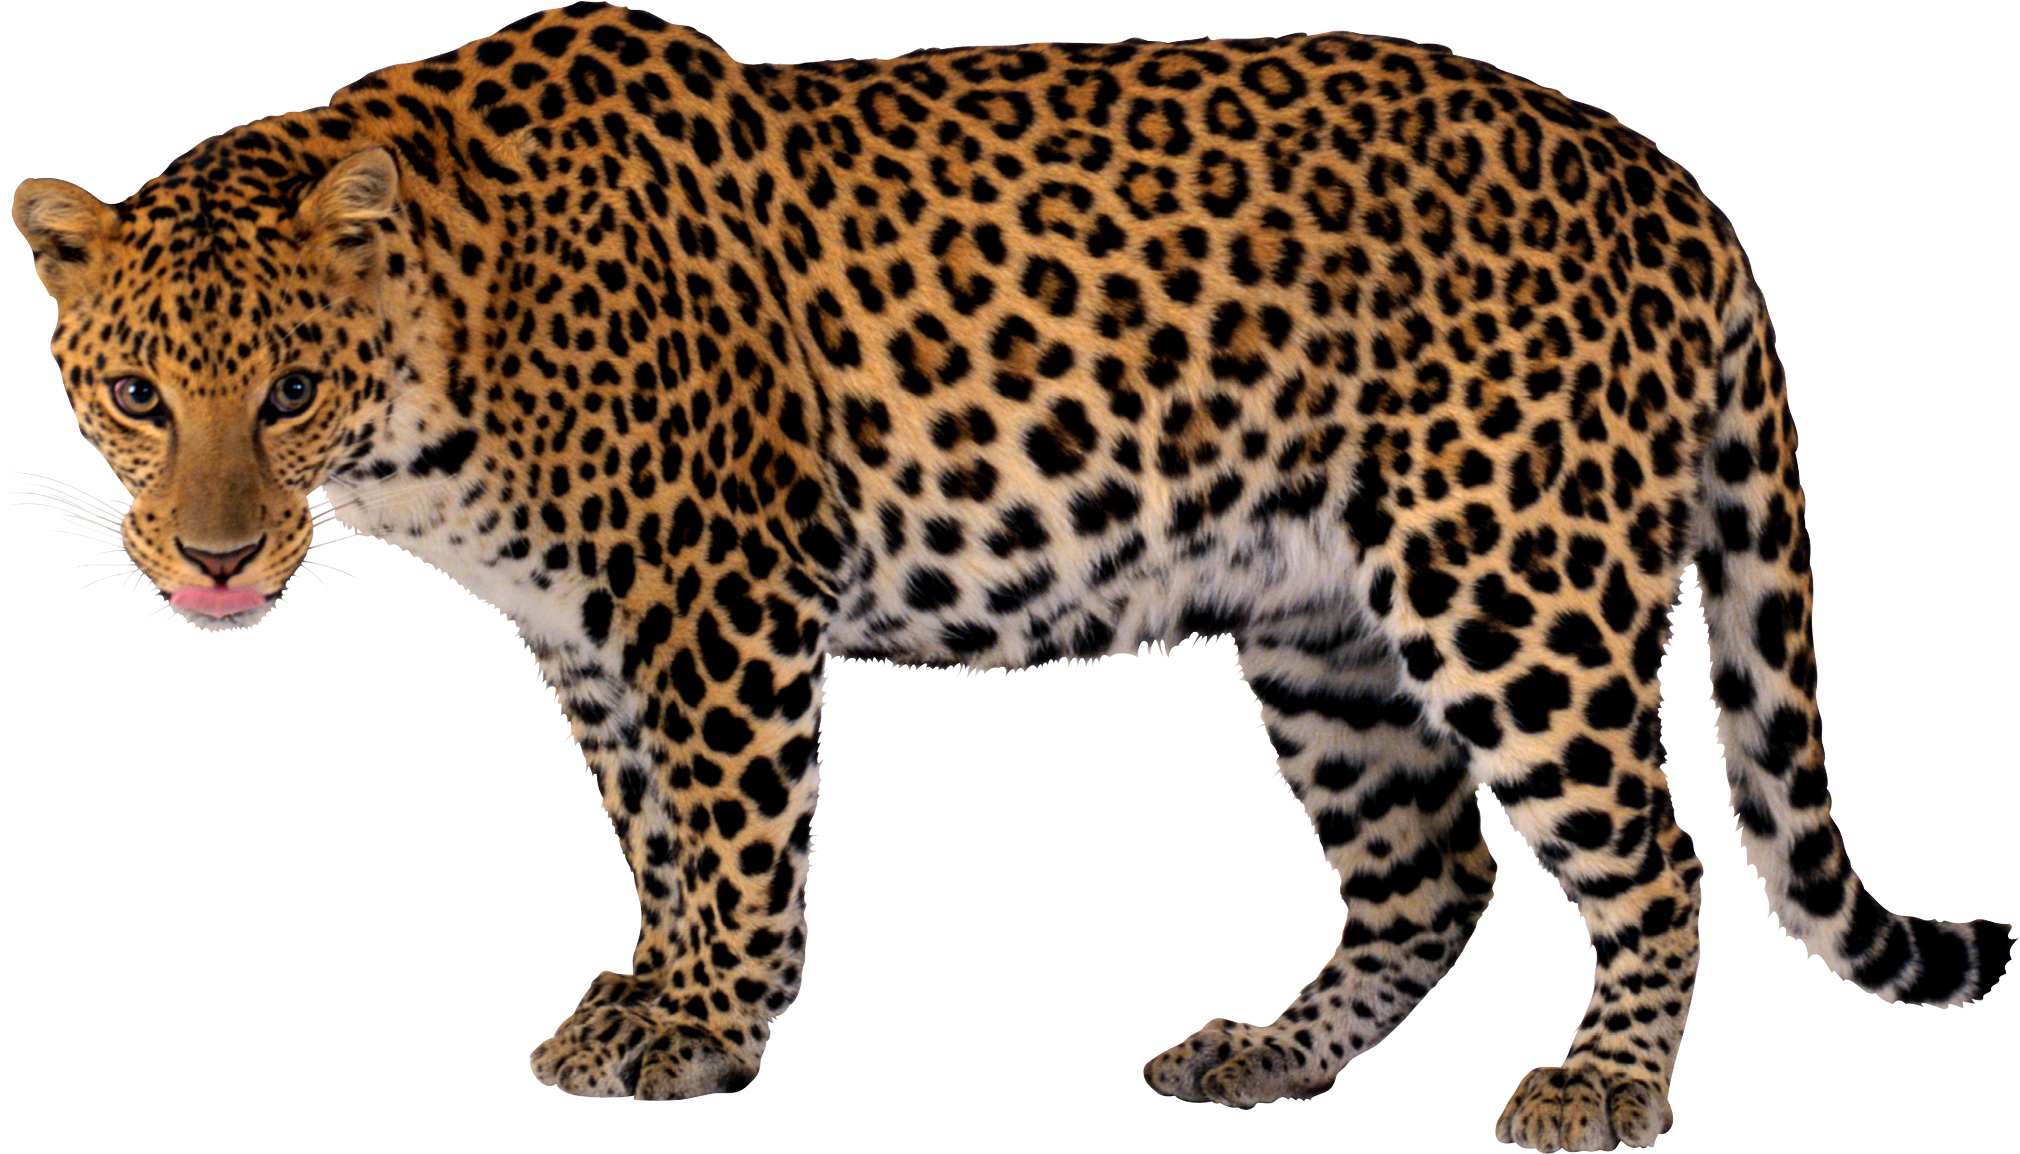 Jaguar-PNG-HD.png